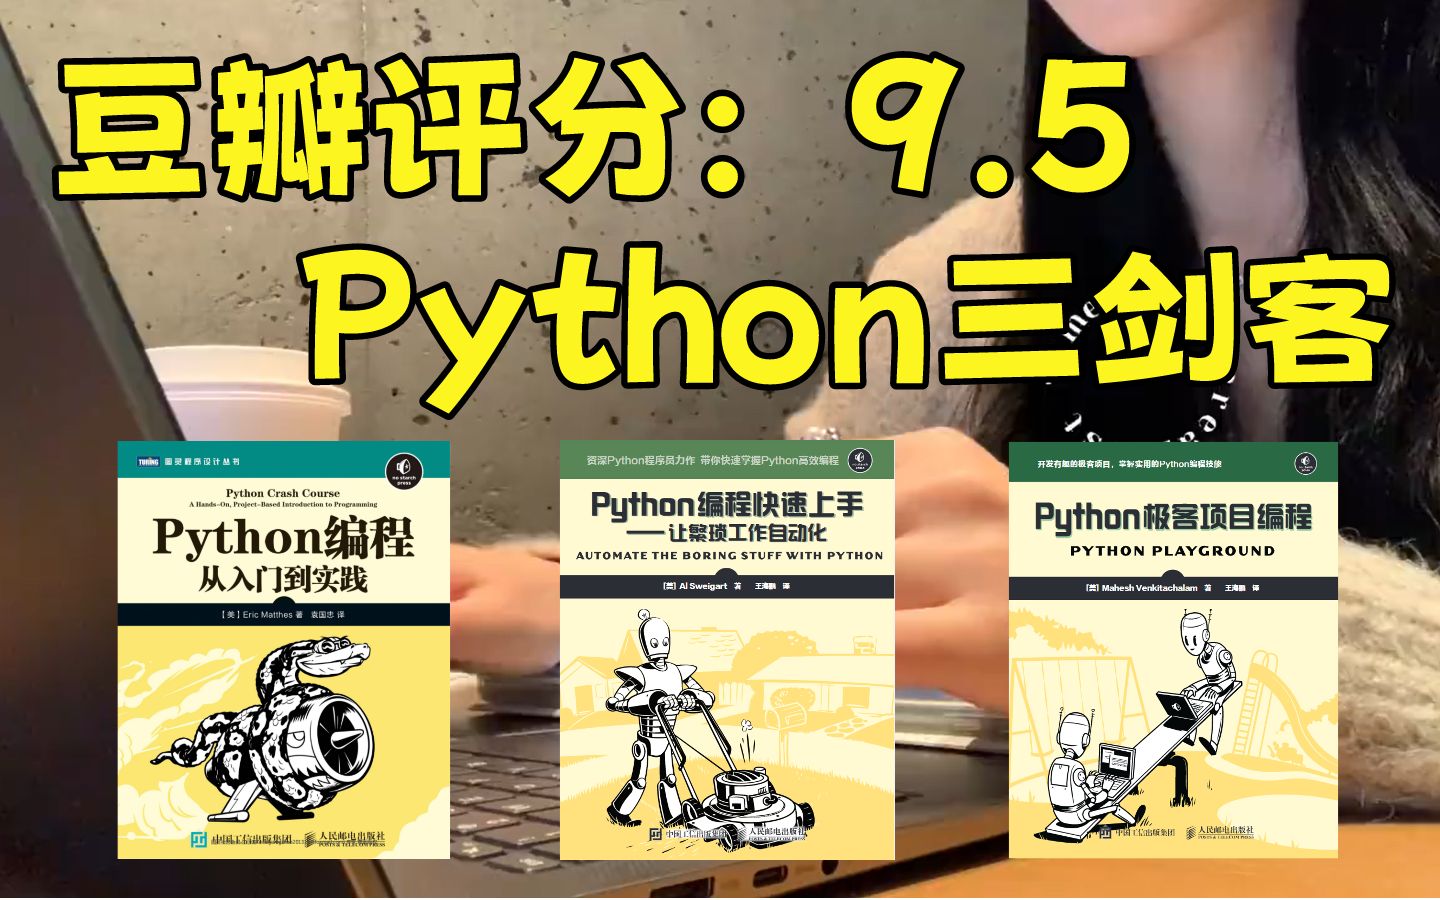 【Python三剑客】强烈建议！所有零基础小白想入门Python的同学，死磕这三本书，从入门到精通这三本书全搞定！！